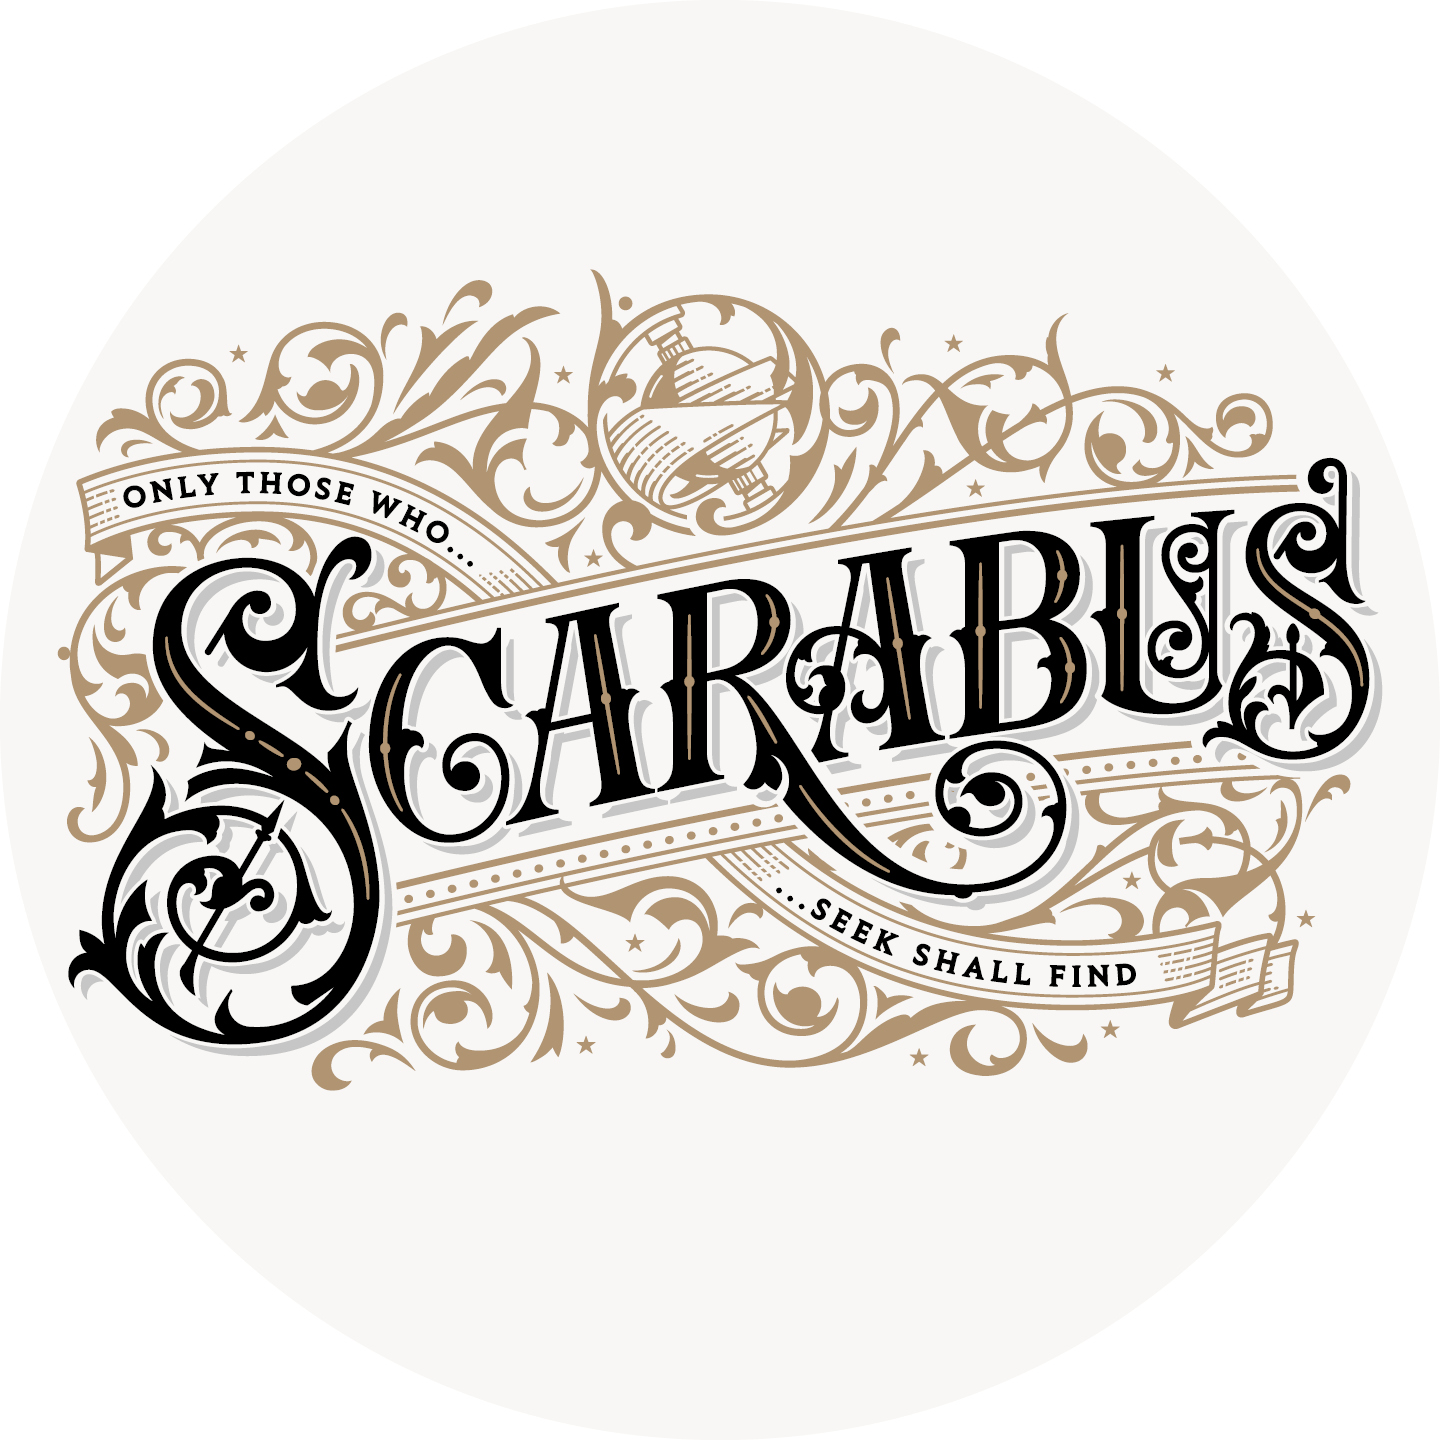 Instagram Bild mit Scarabus Logo